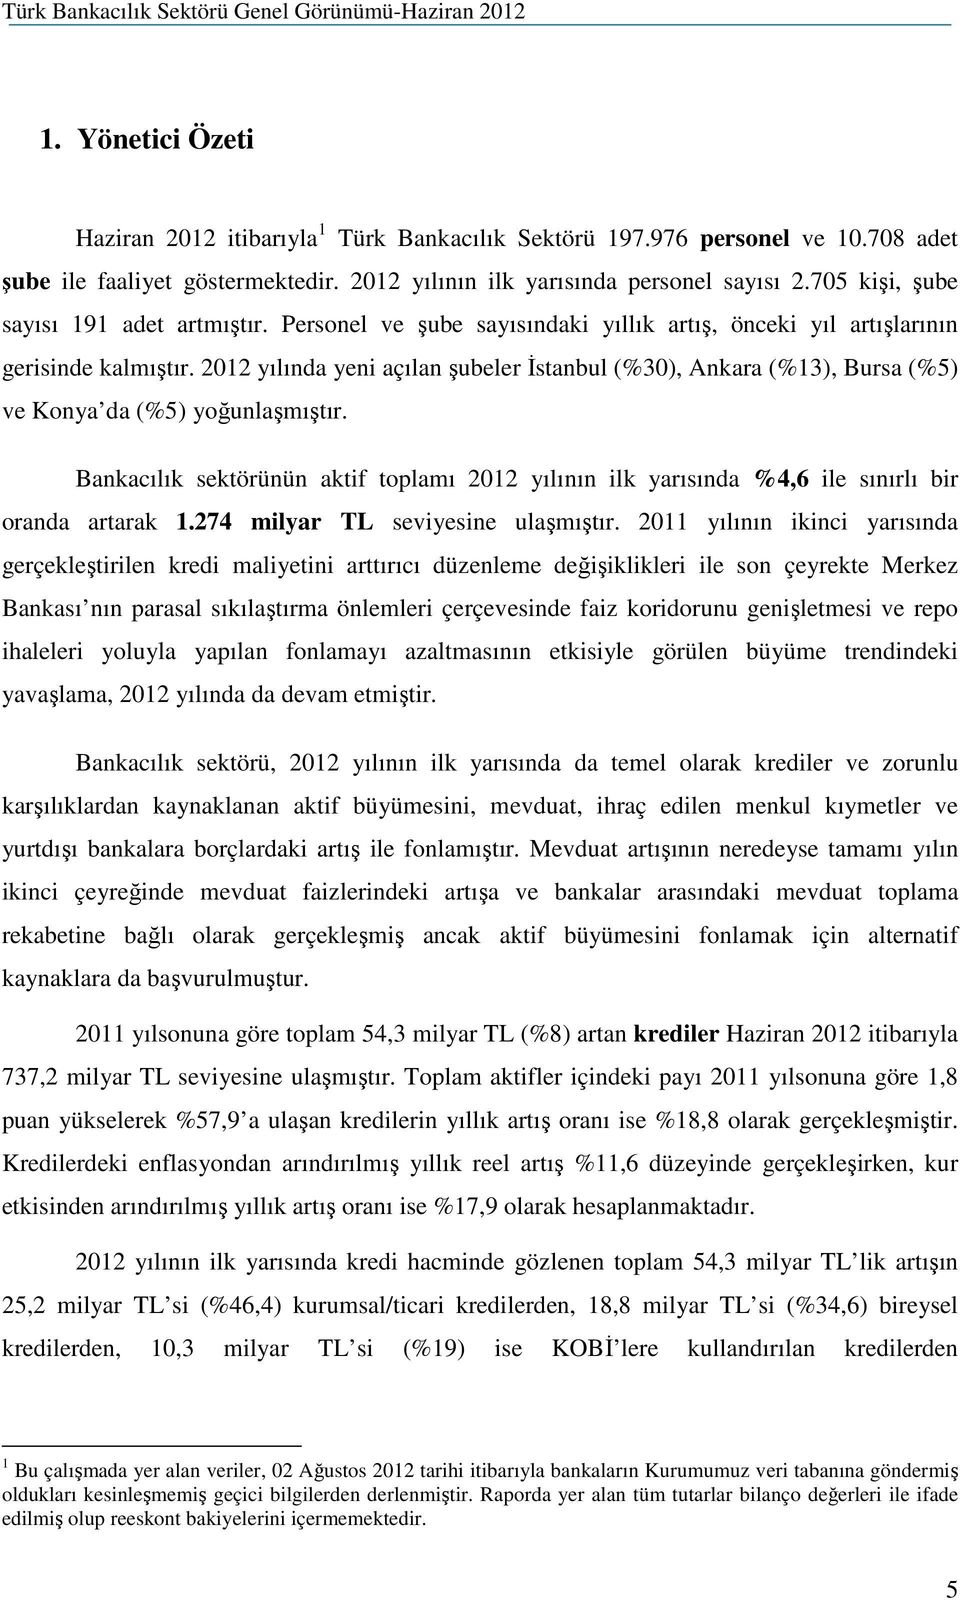 2012 yılında yeni açılan şubeler Đstanbul (%30), Ankara (%13), Bursa (%5) ve Konya da (%5) yoğunlaşmıştır.